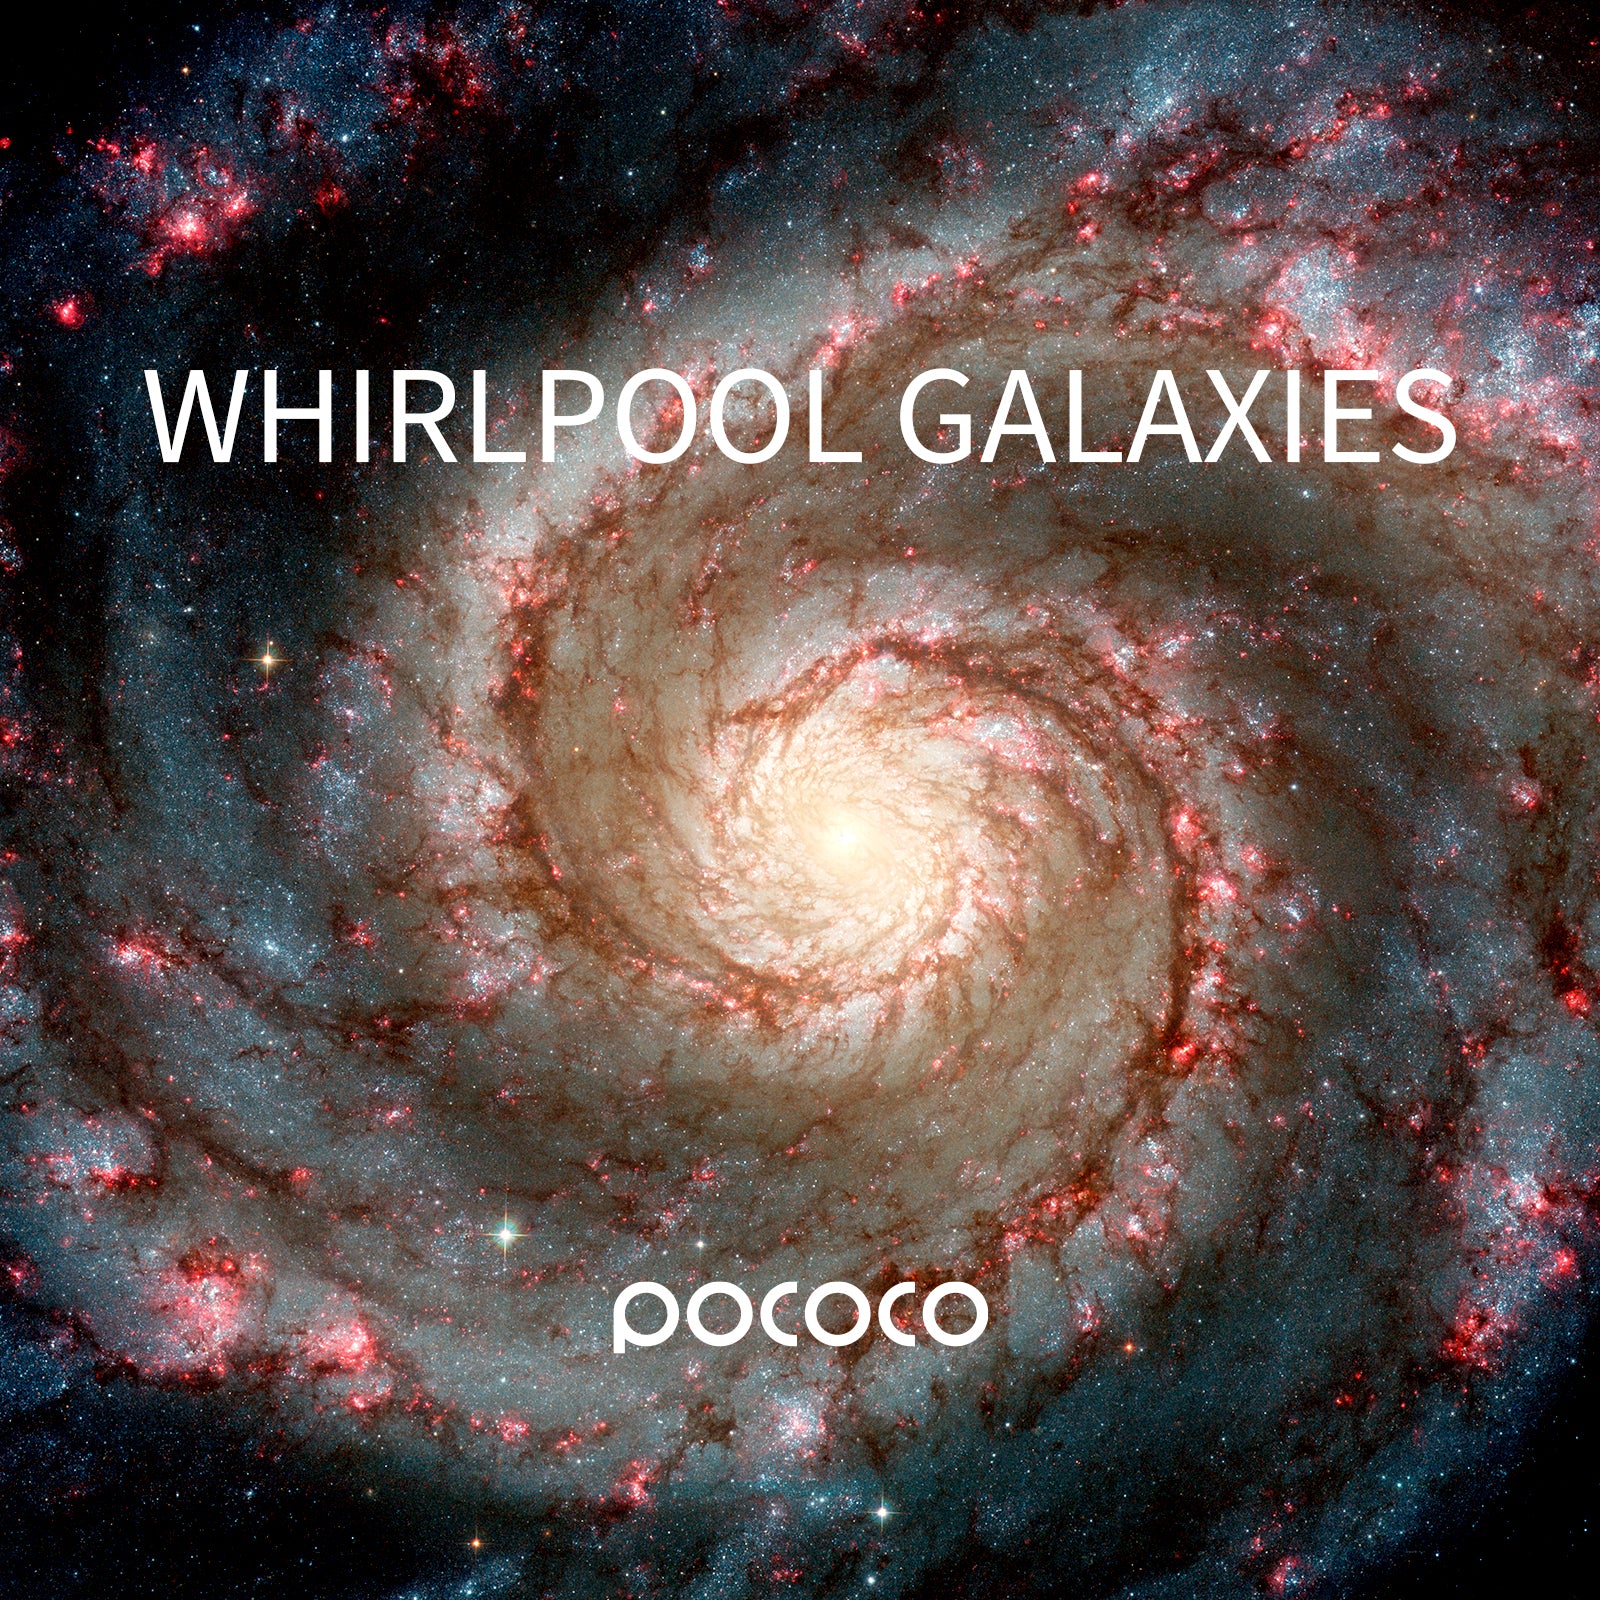 Free Choice of POCOCO Galaxy Projector | 1 Piece